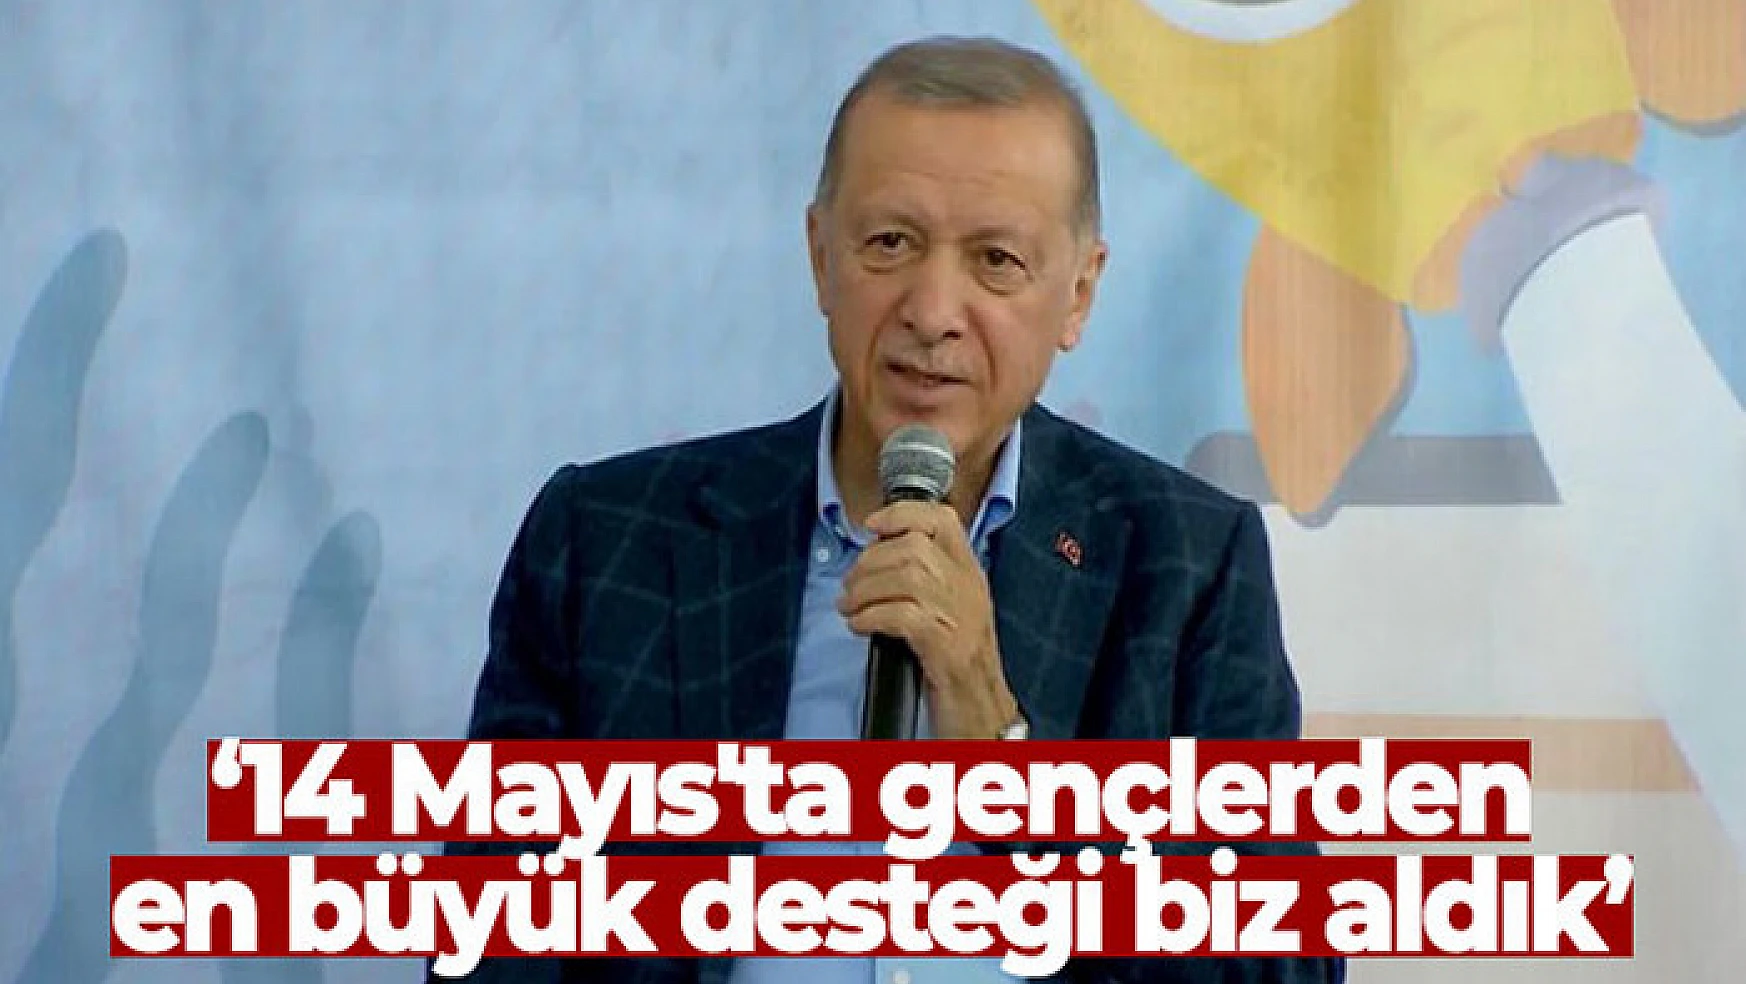 Cumhurbaşkanı Erdoğan: '14 Mayıs'ta gençlerden en büyük desteği biz aldık'